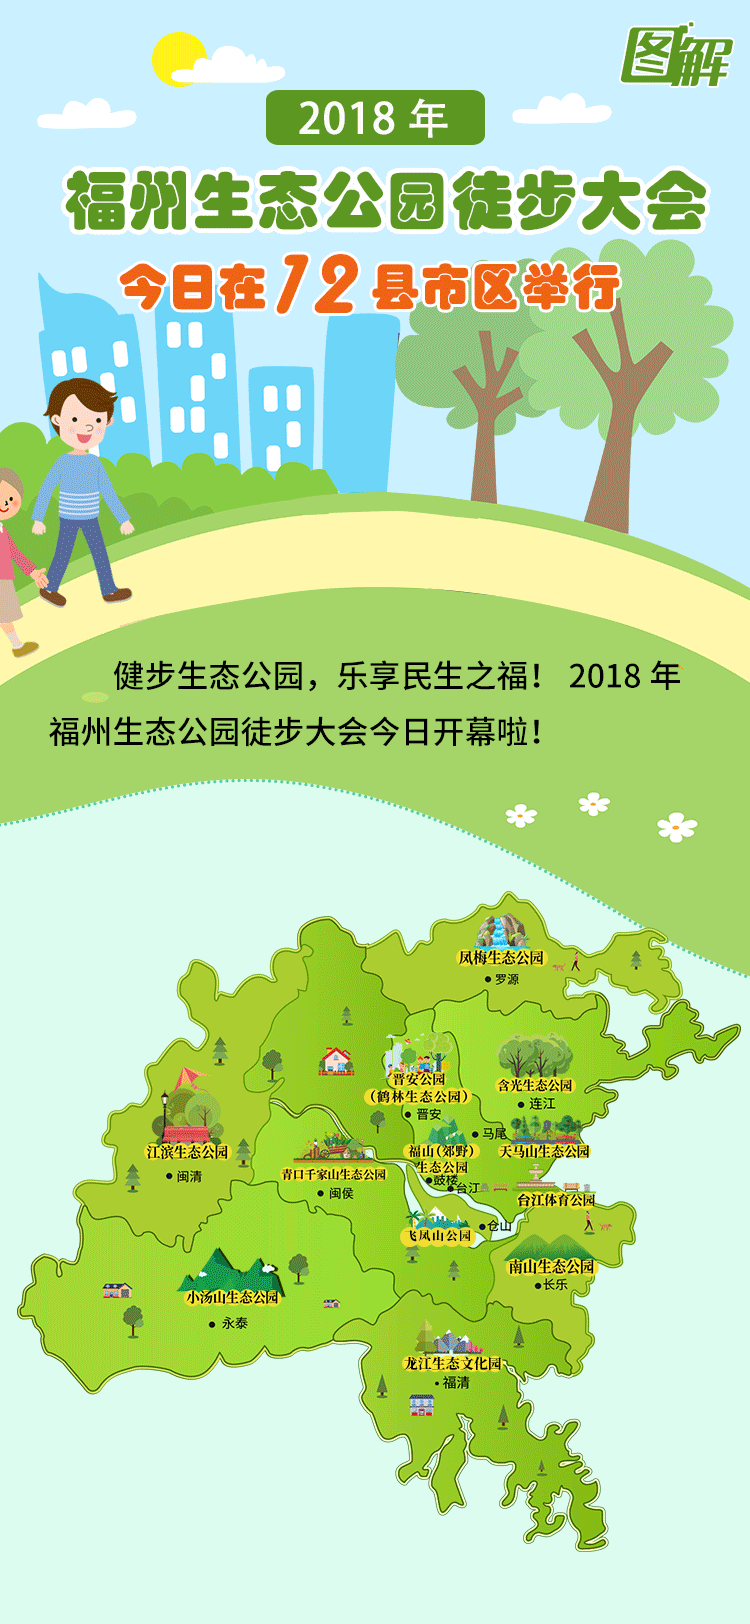 2018年福州生态公园徒步大会今日在12县市区举行